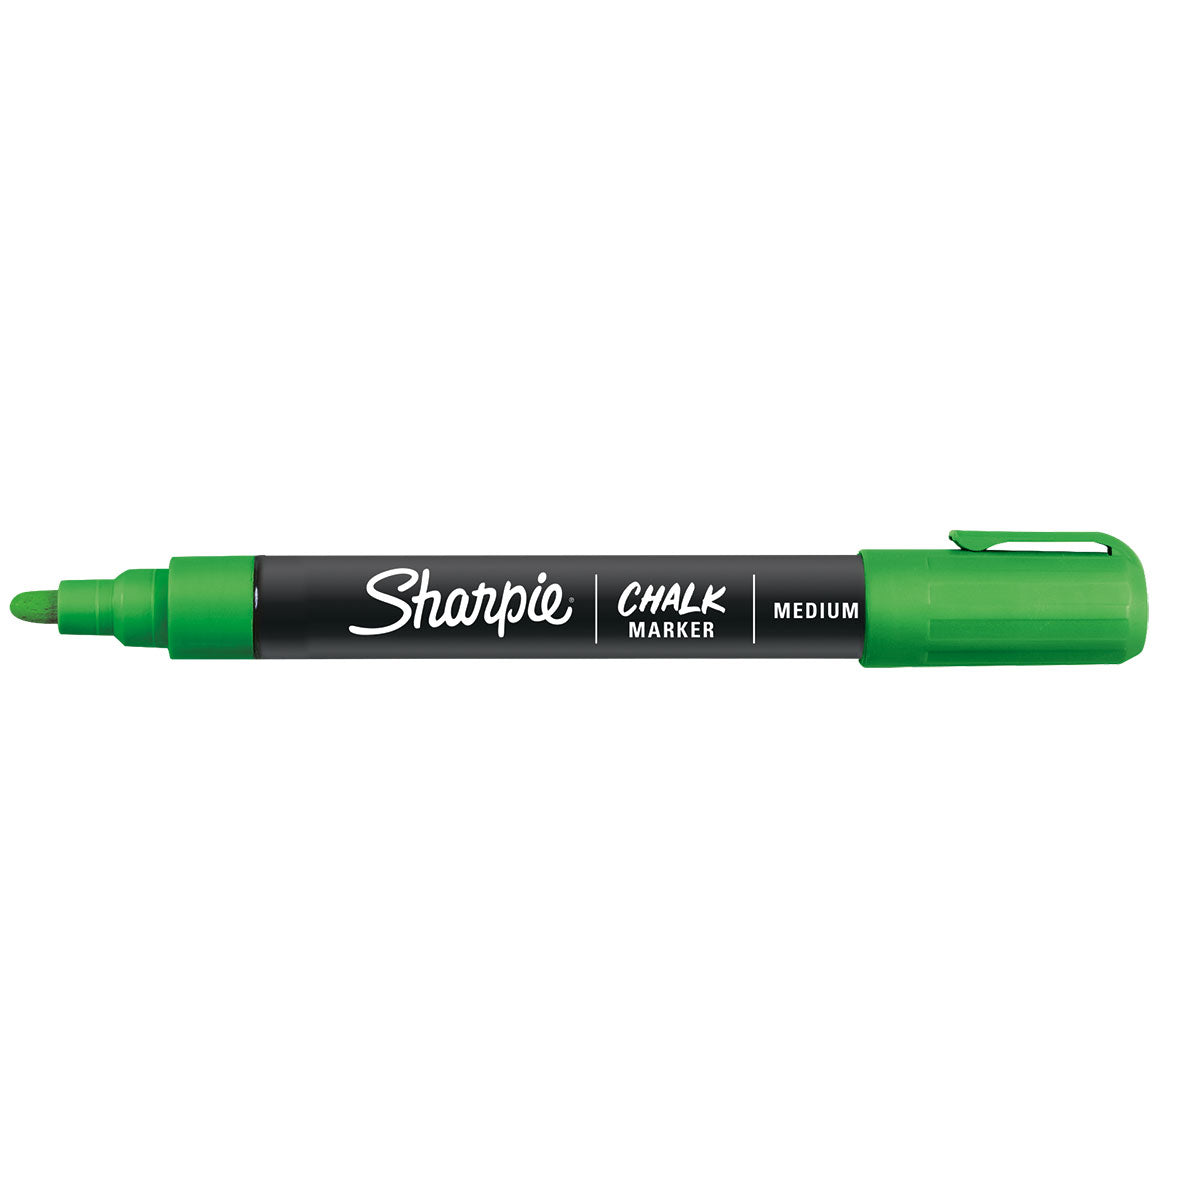 sharpie green wet erase markers